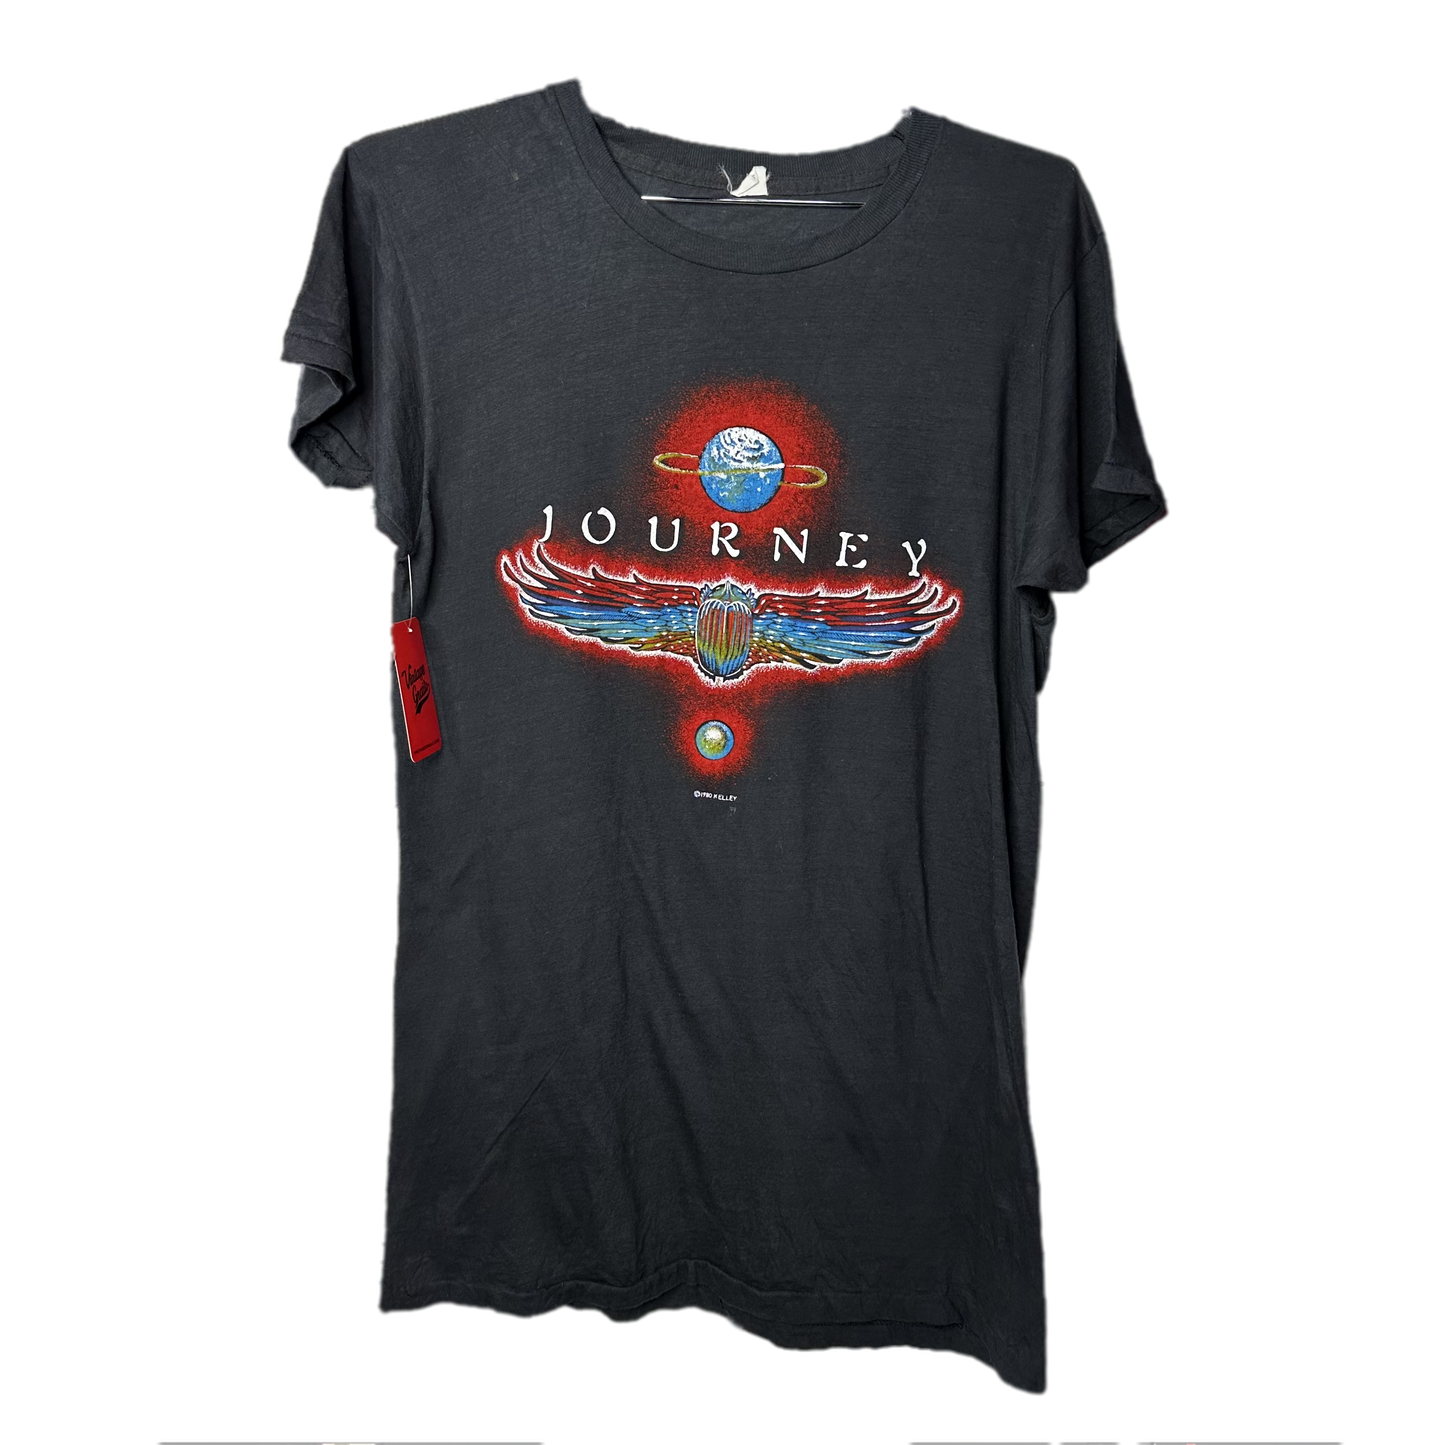 '80 Journey Departures Album World Tour Music T-shirt sz L